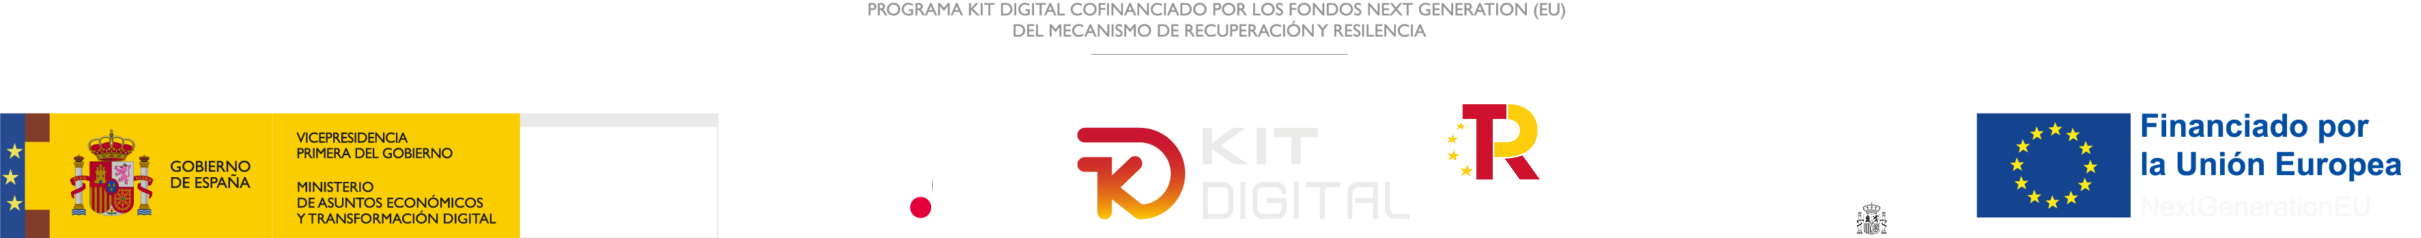 Financiado por Kit Digital